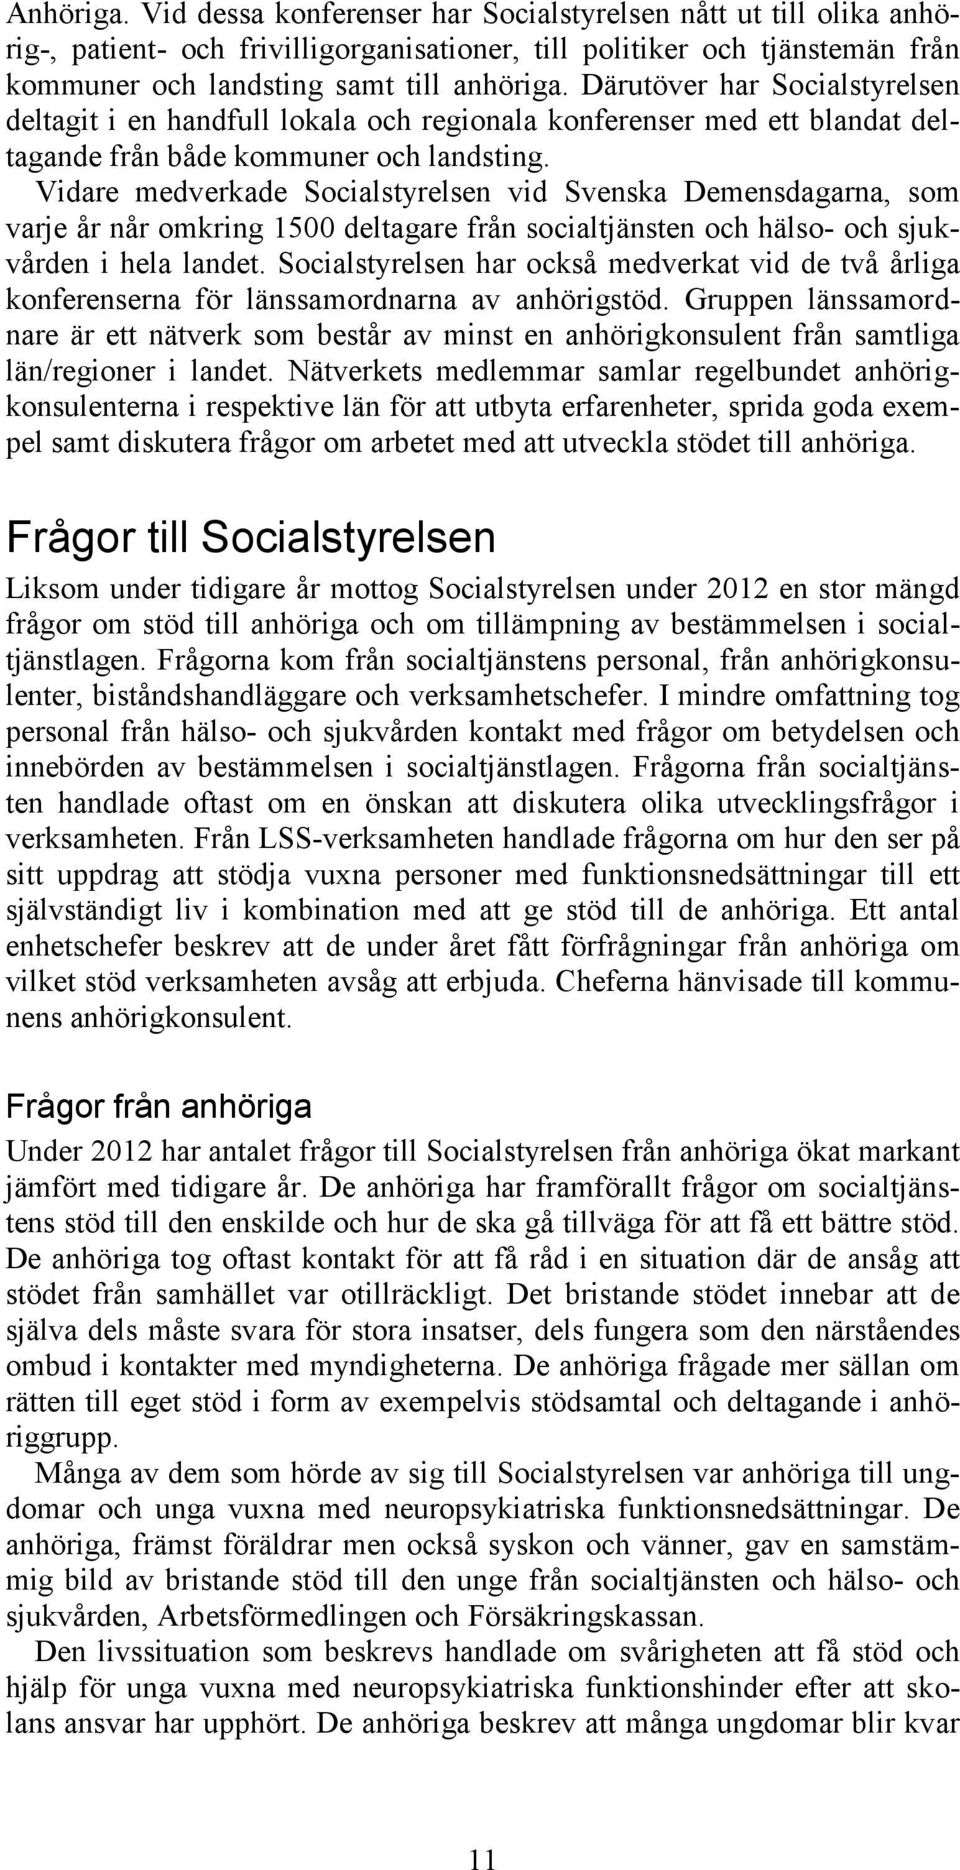 Vidare medverkade Socialstyrelsen vid Svenska Demensdagarna, som varje år når omkring 1500 deltagare från socialtjänsten och hälso- och sjukvården i hela landet.